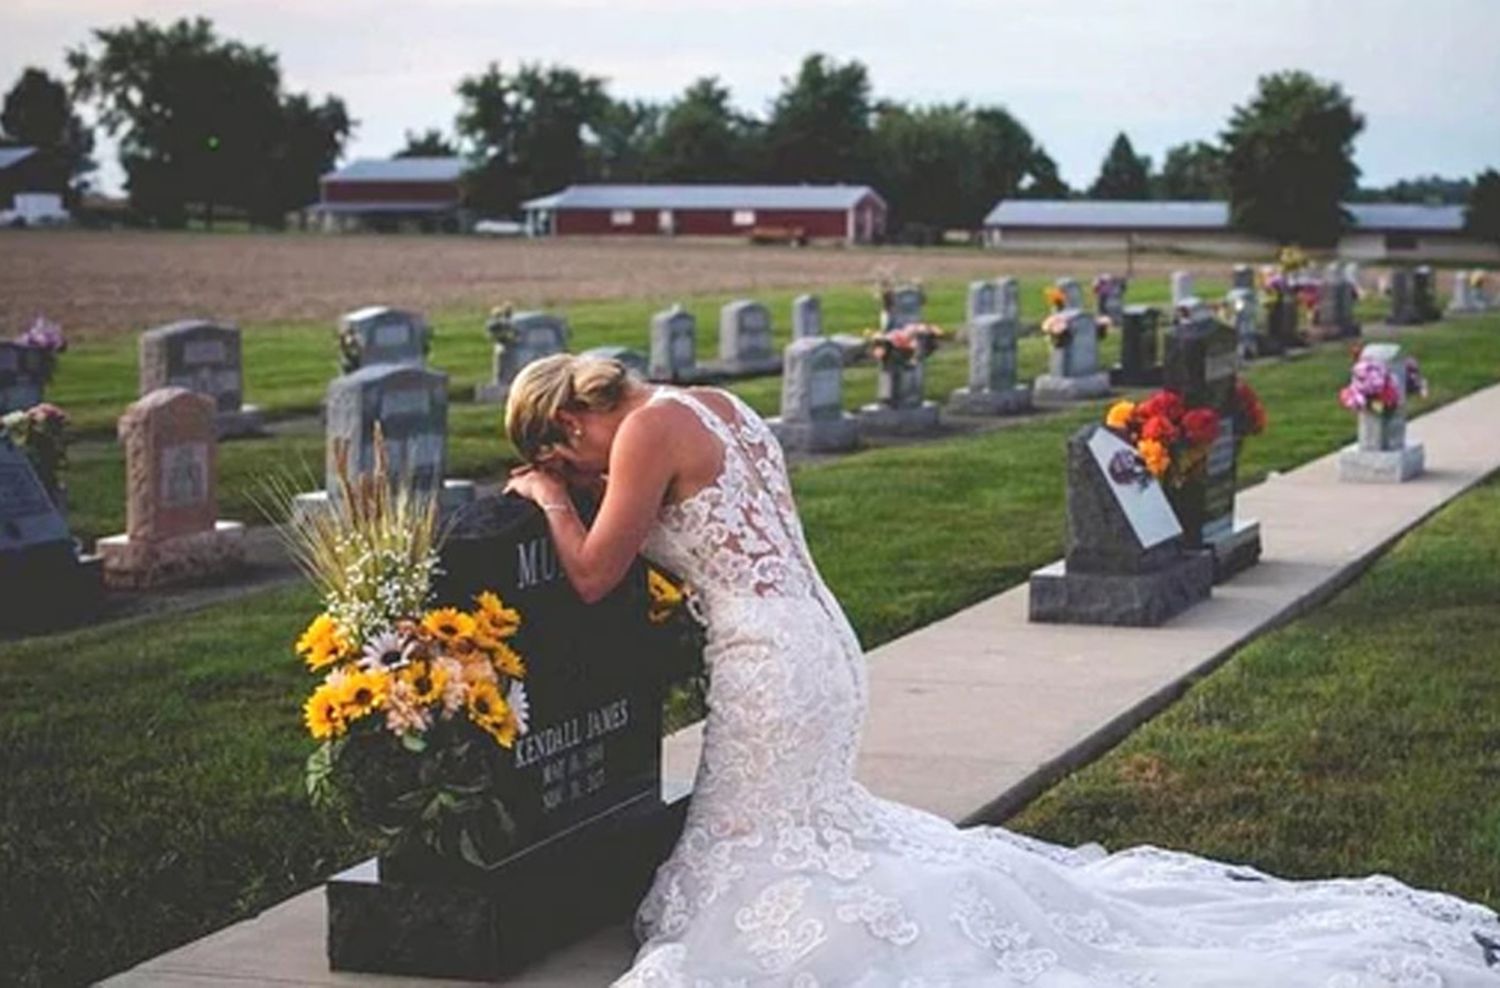 La historia detrás de la conmovedora foto de una mujer vestida de novia que llora sobre la tumba de su prometido